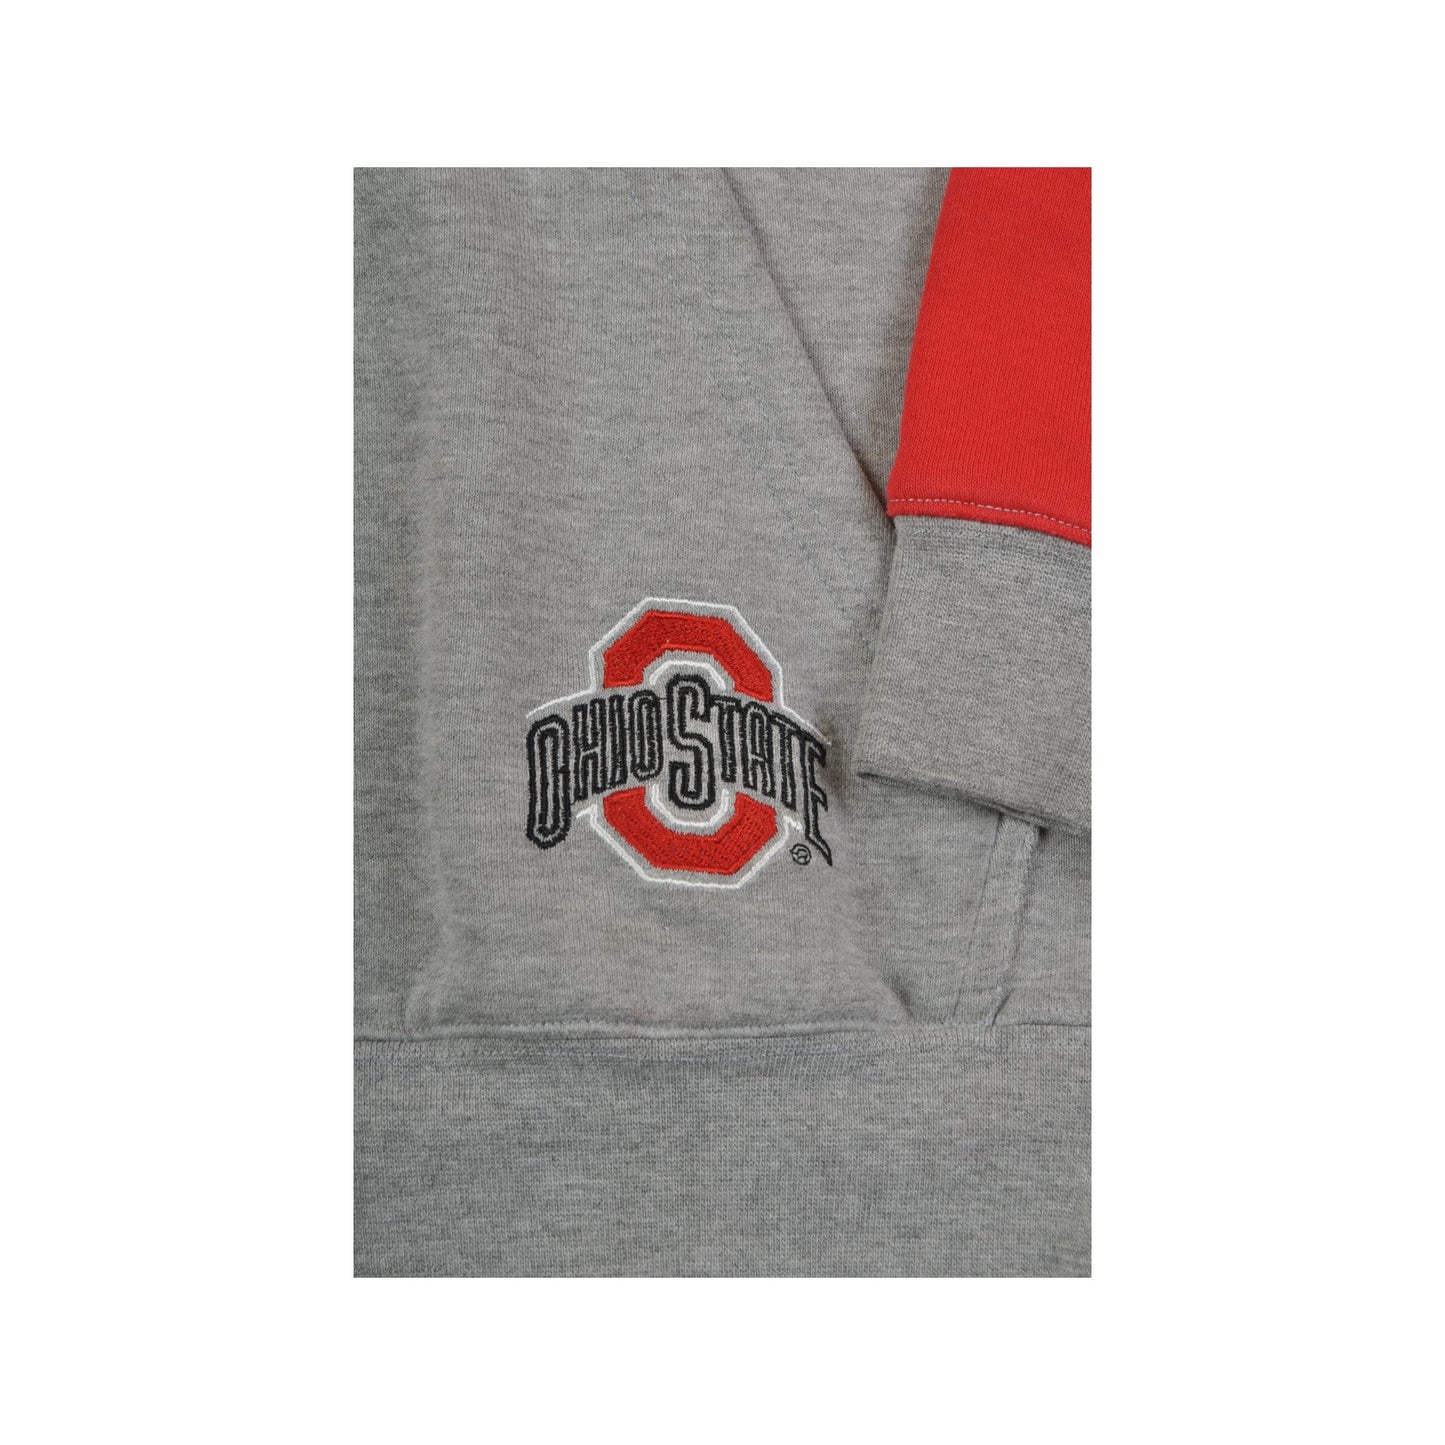 Vintage Ohio State Buckeyes Hoodie Sweatshirt Grey Medium